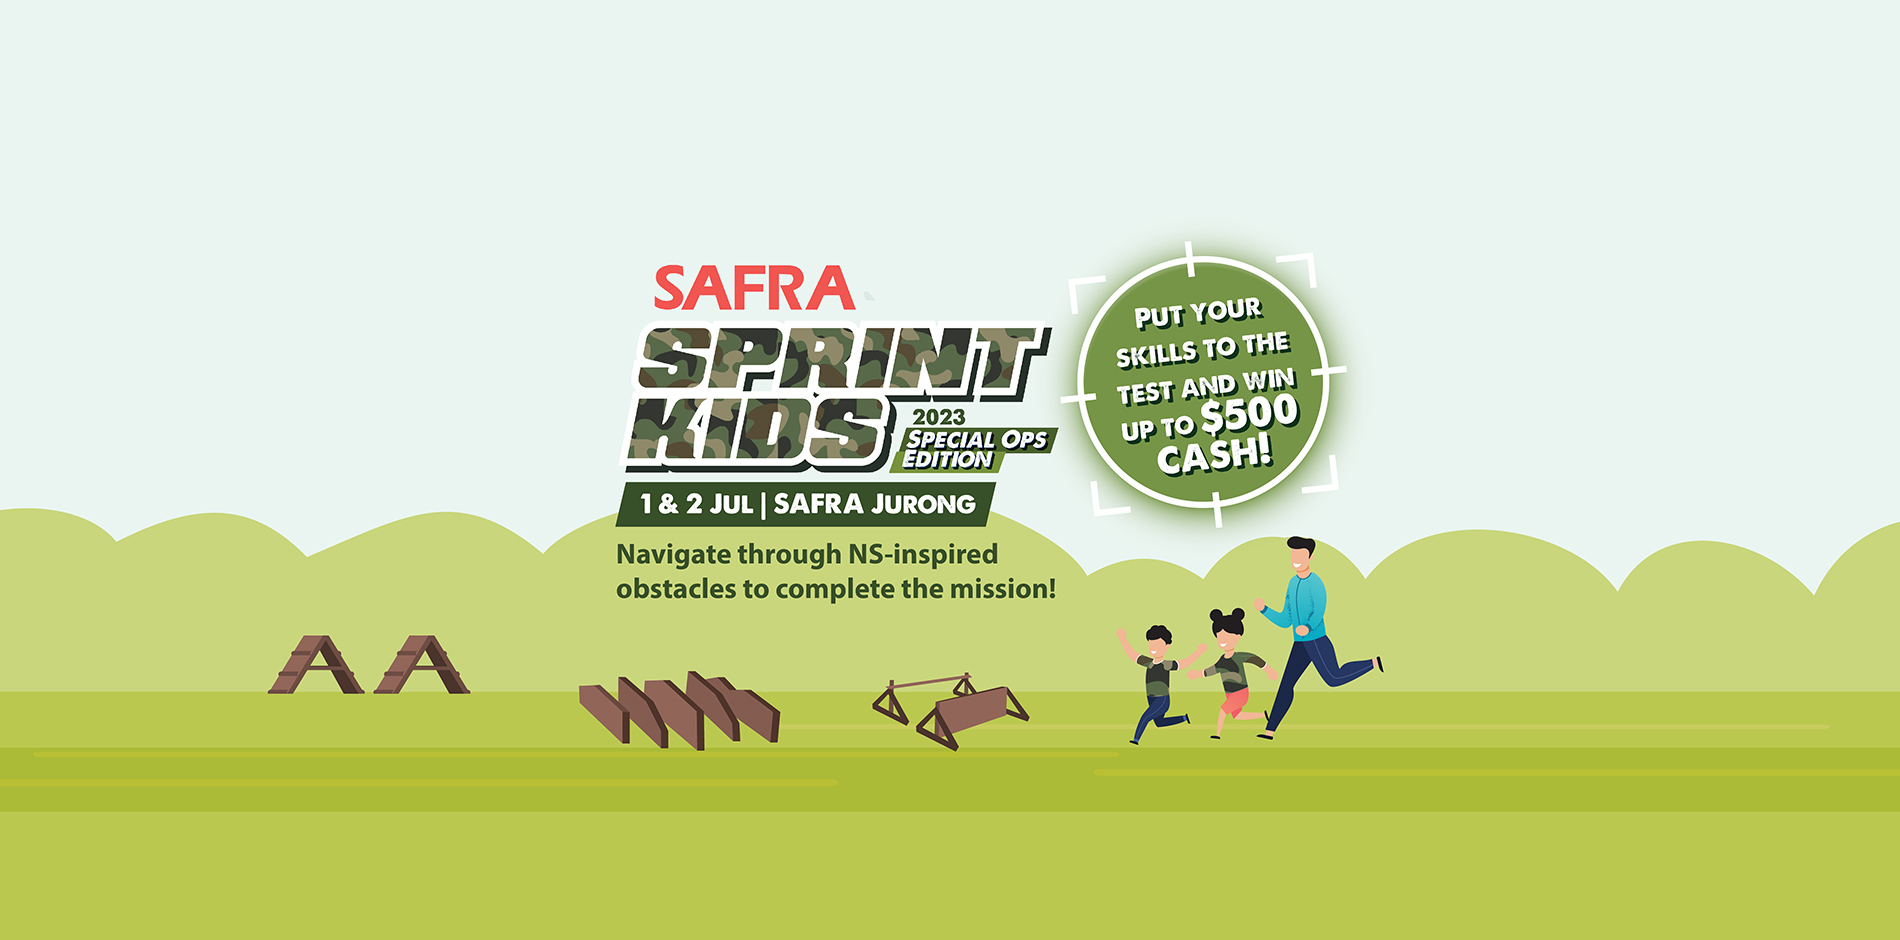 SAFRA-Sprint-Kids-2023-HeroBanner